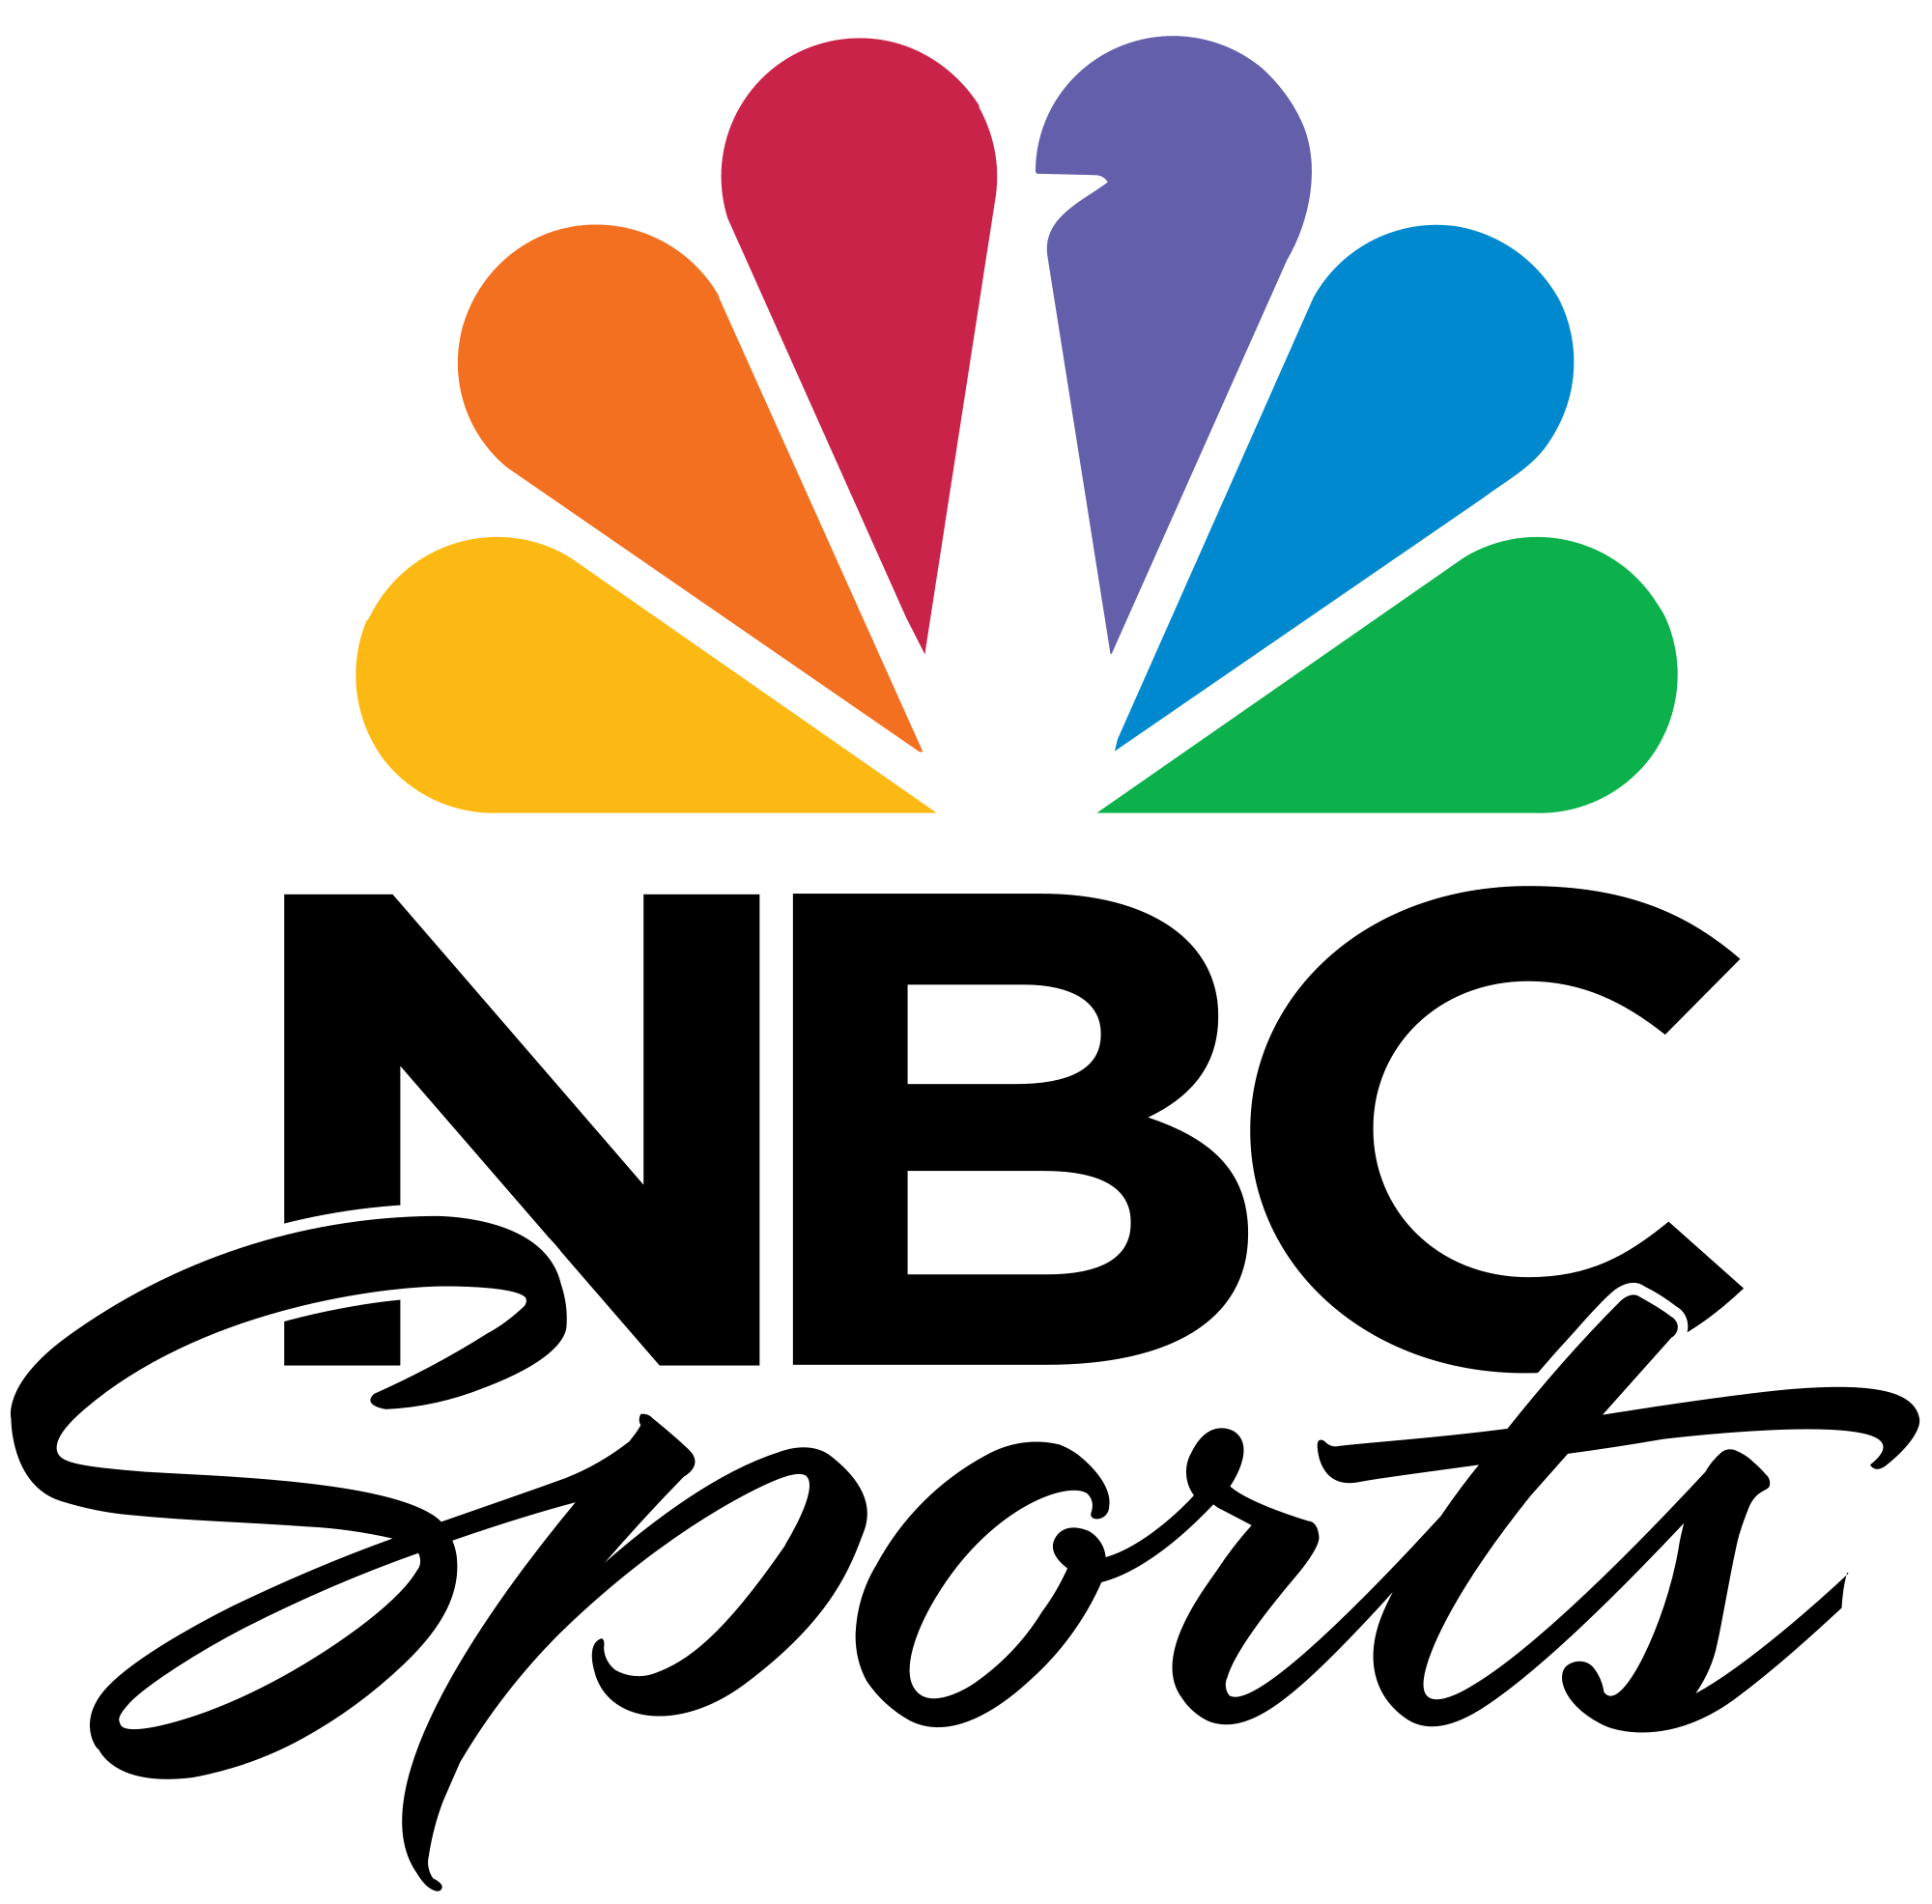 Nbcsports.com Logo - NBC Sports